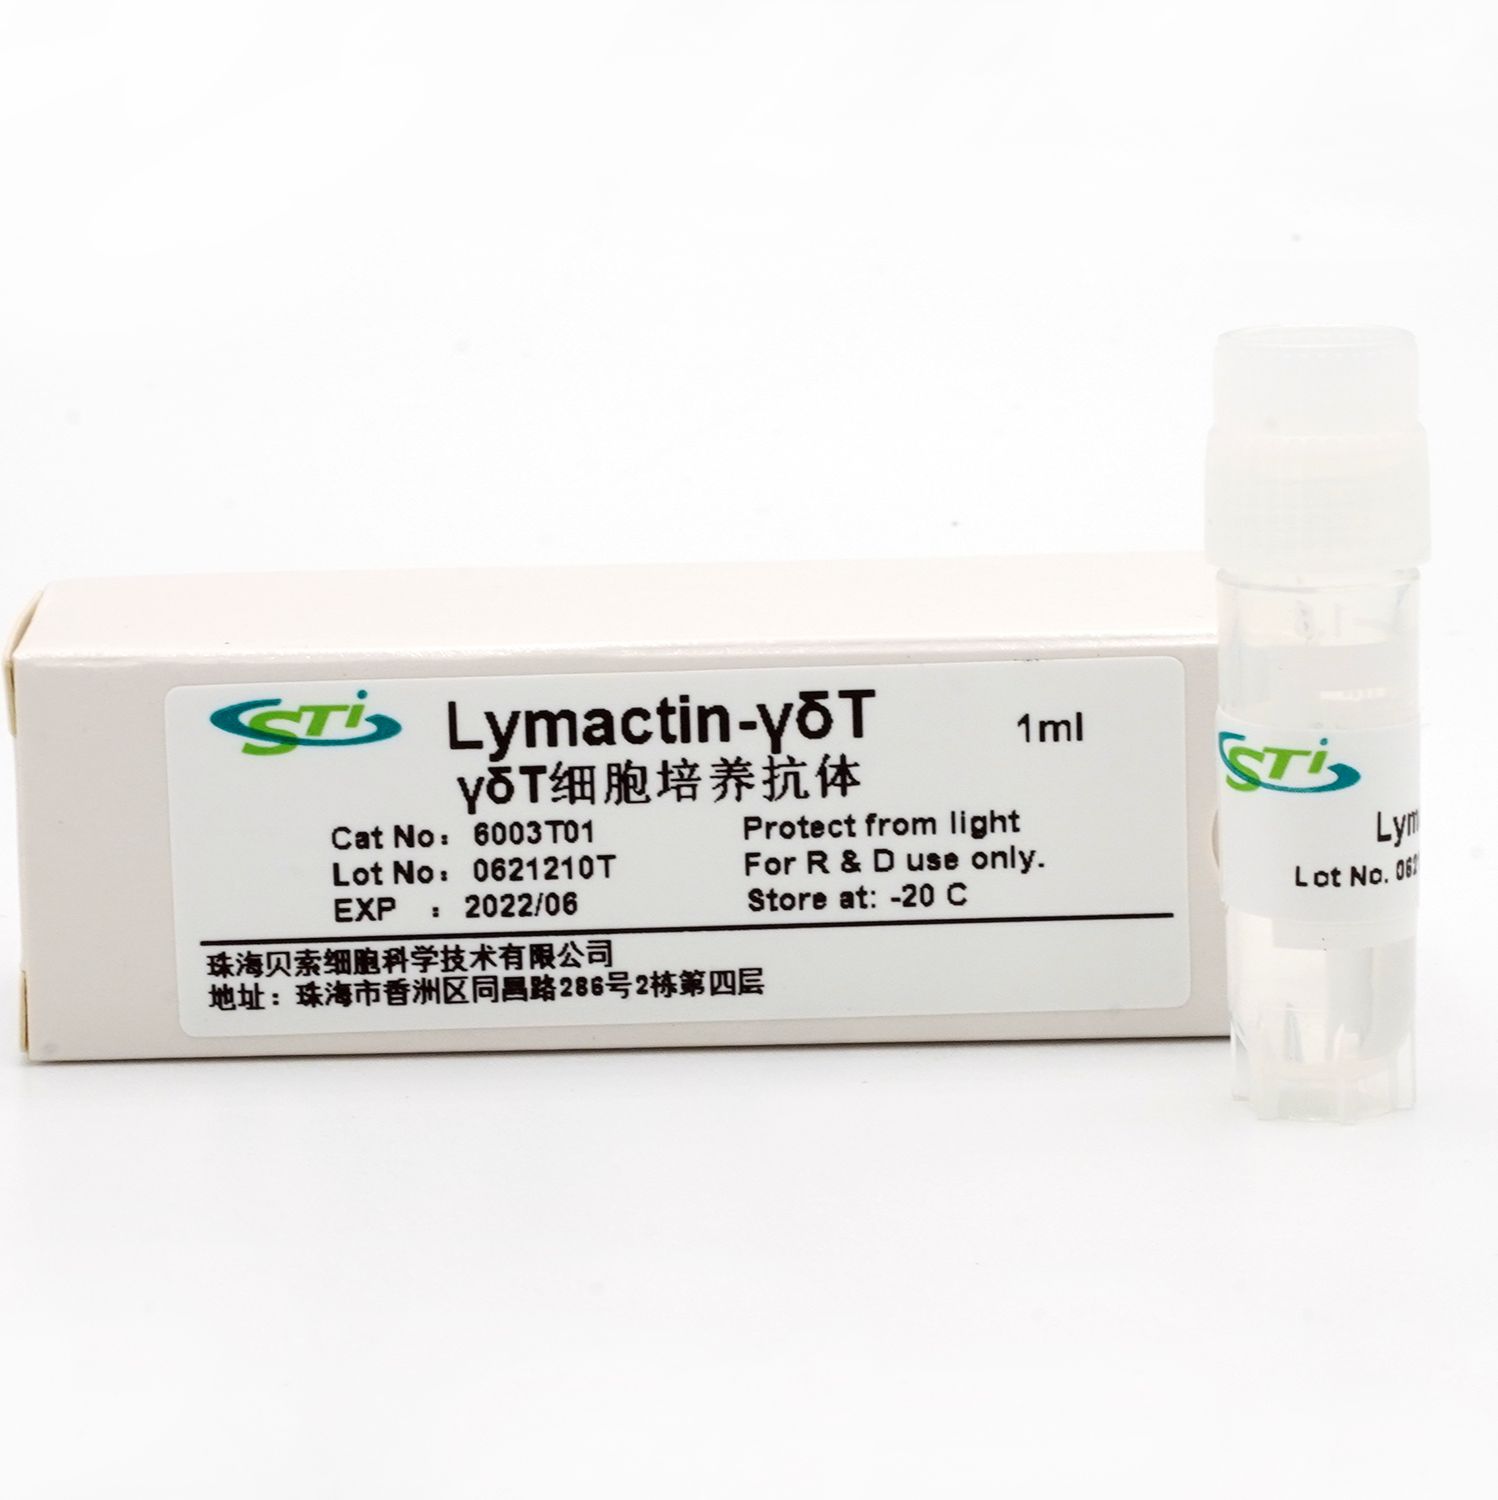 贝索细胞/CSTI | γδT细胞培养抗体Lymactin-γδT